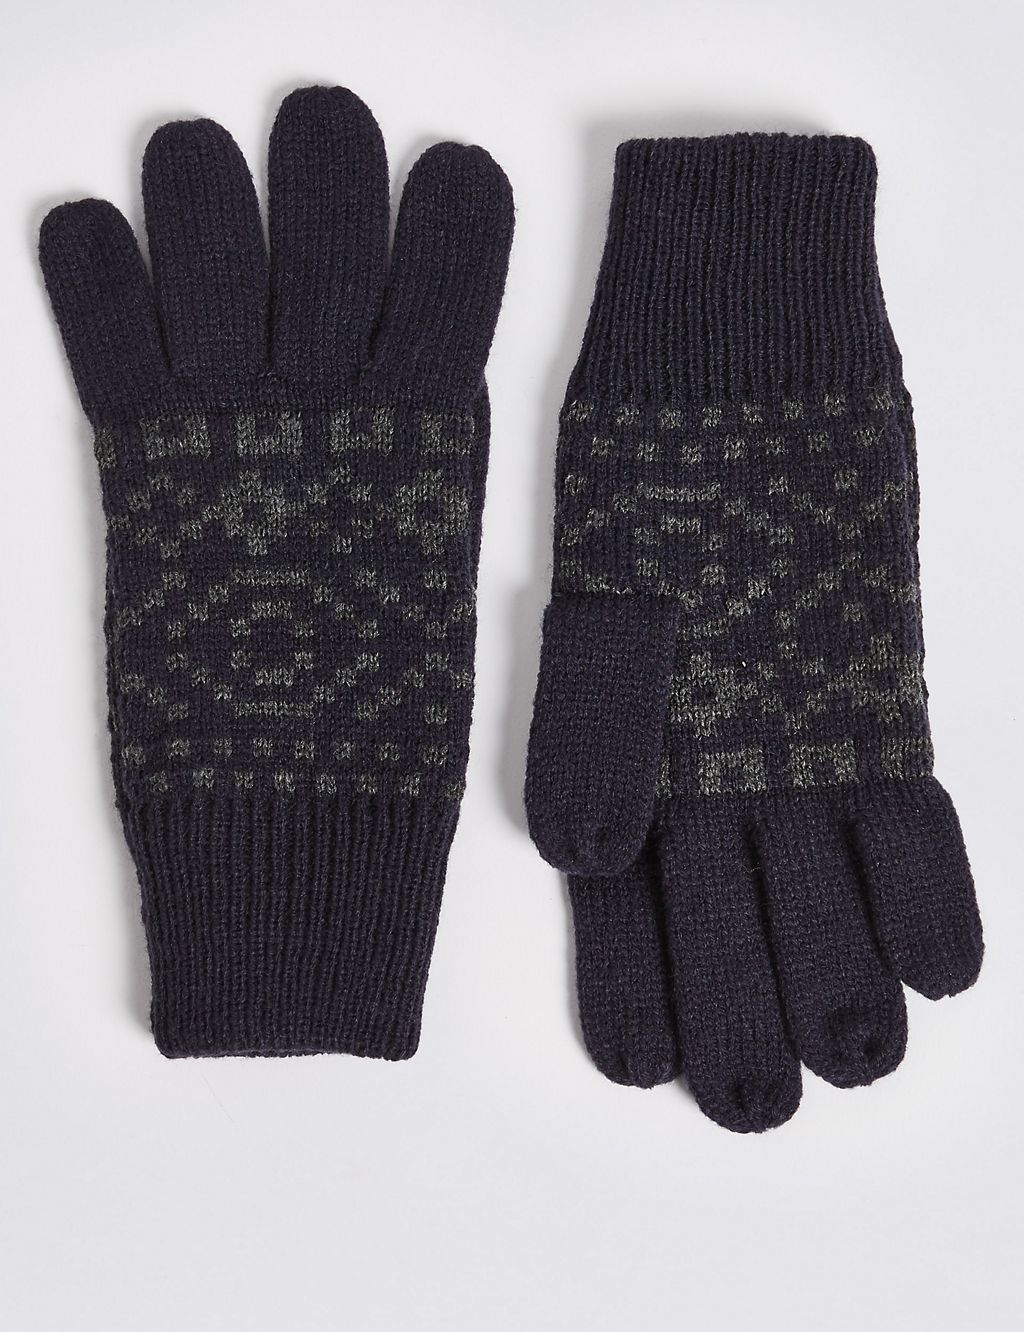 Knitted Fairisle Gloves 1 of 1